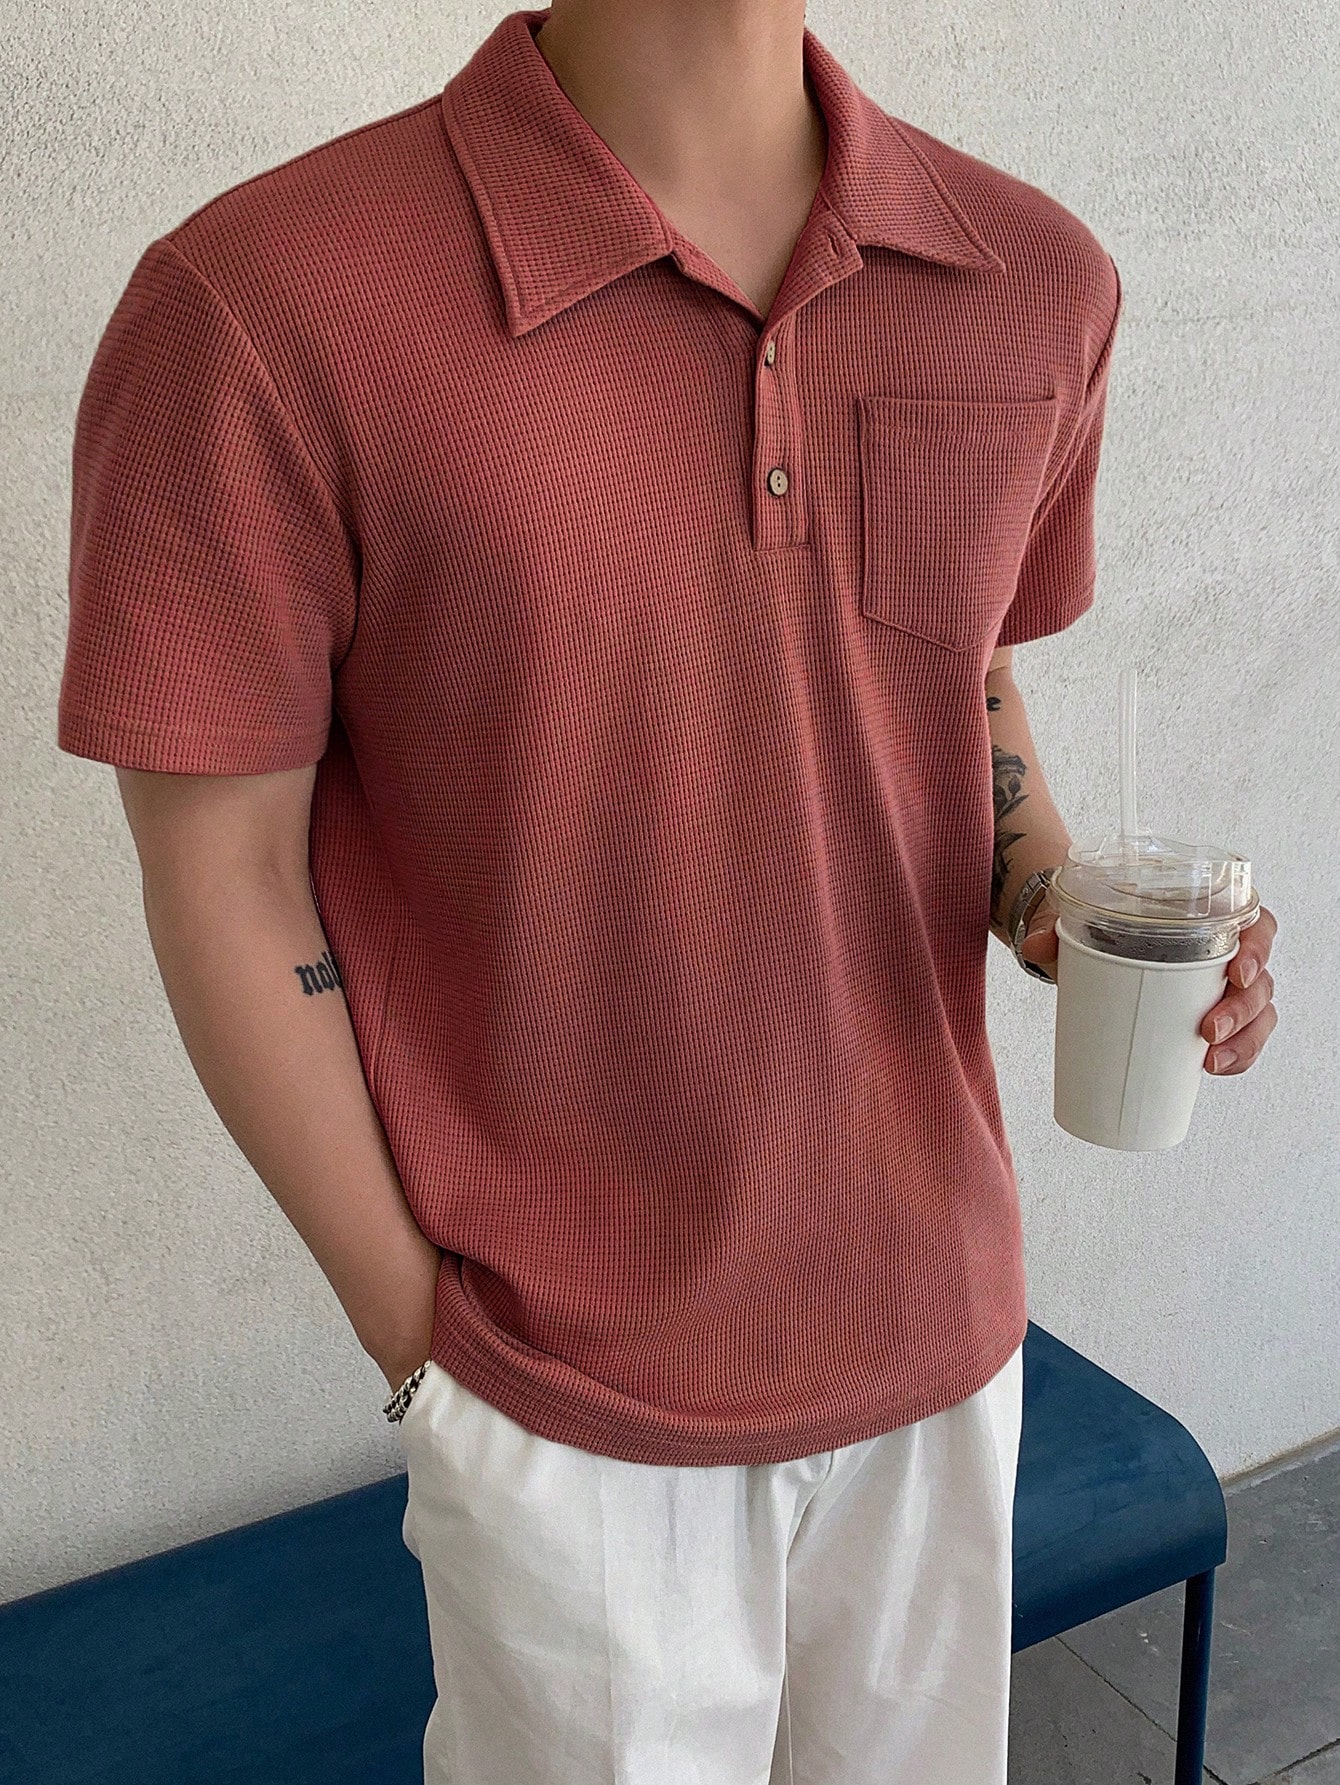 DAZY Мужская однотонная рубашка поло с коротким рукавом на лето, красный dazy мужская летняя рубашка с коротким рукавом и принтом пейсли многоцветный